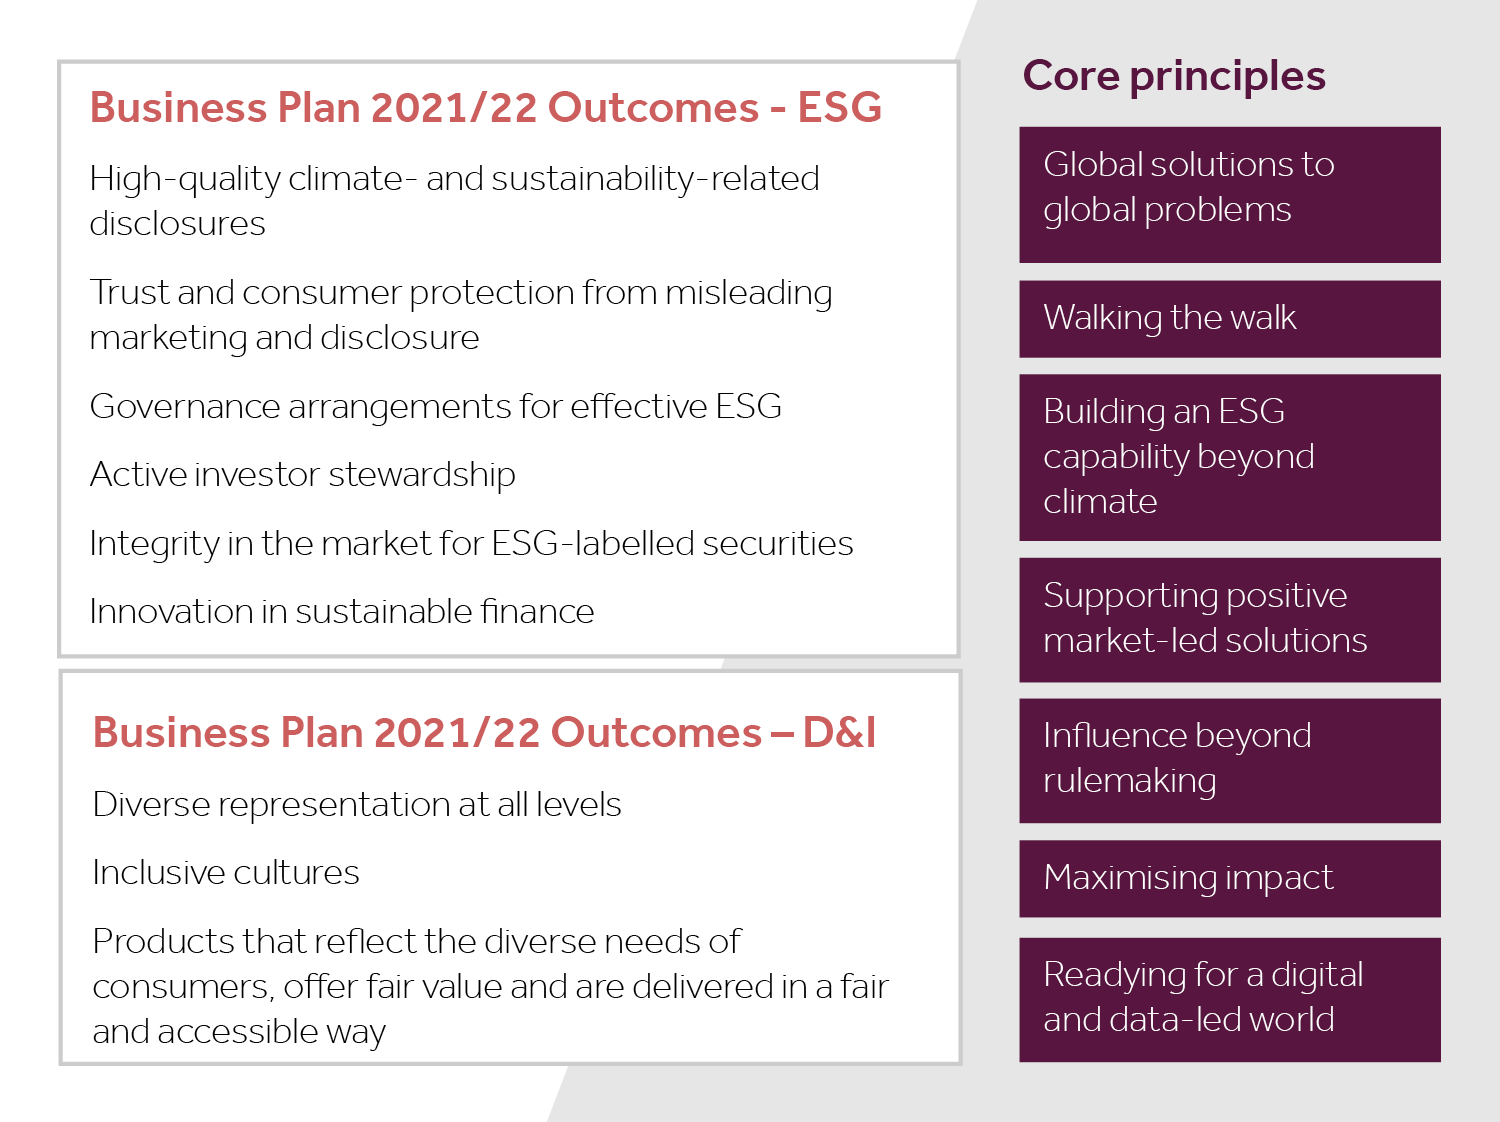 Infographic describing our business plan 2021/22 outcomes for ESG